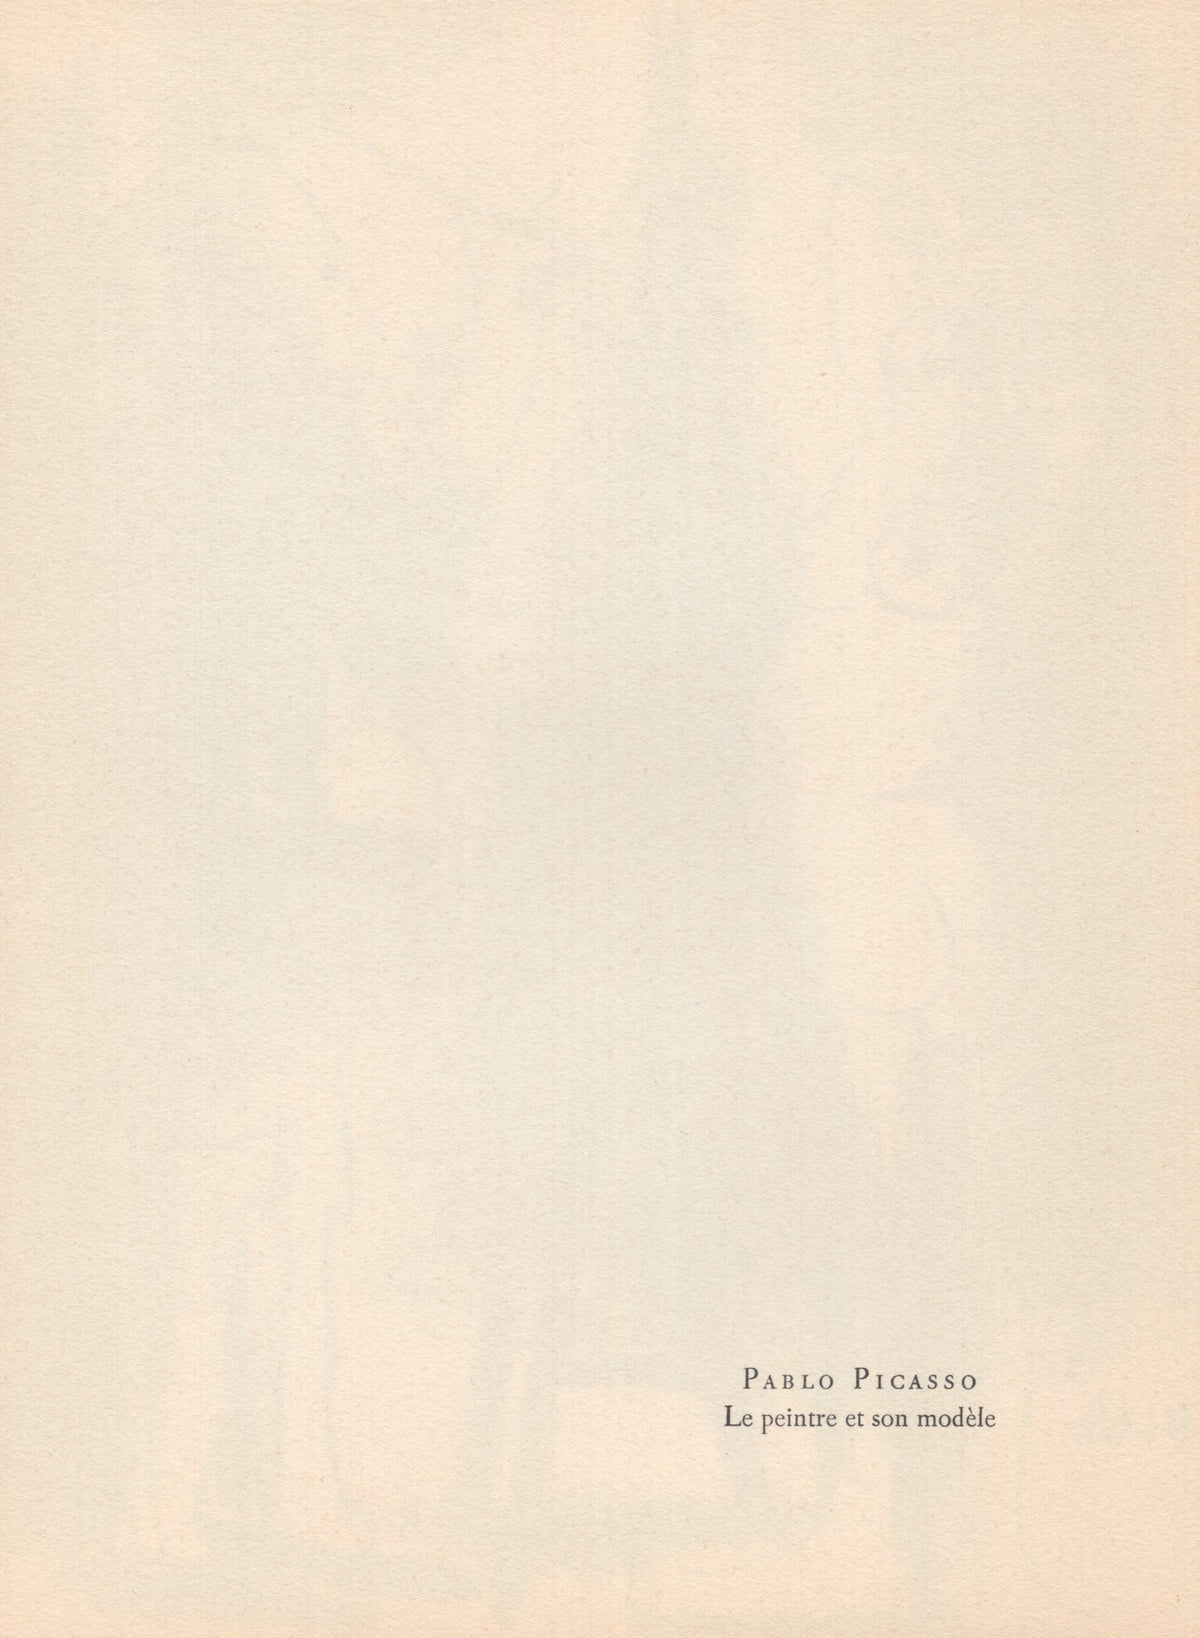 Pablo Picasso - &quot;Le peintre et son modele&quot; - Mourlot Press 1964 Lithograph - 7.5 x 10&quot;